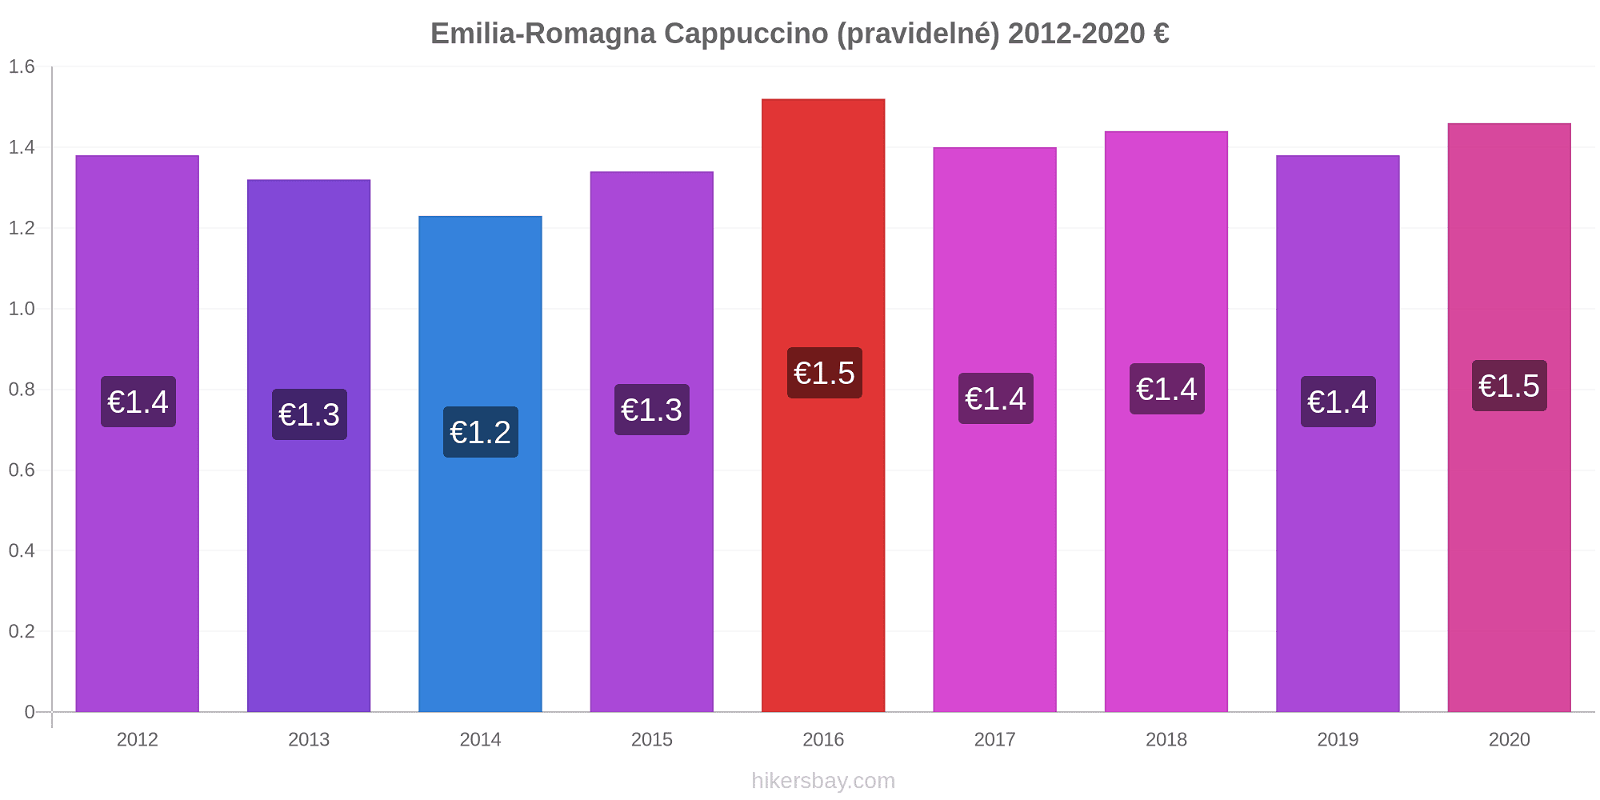 Emilia-Romagna změny cen Cappuccino (pravidelné) hikersbay.com